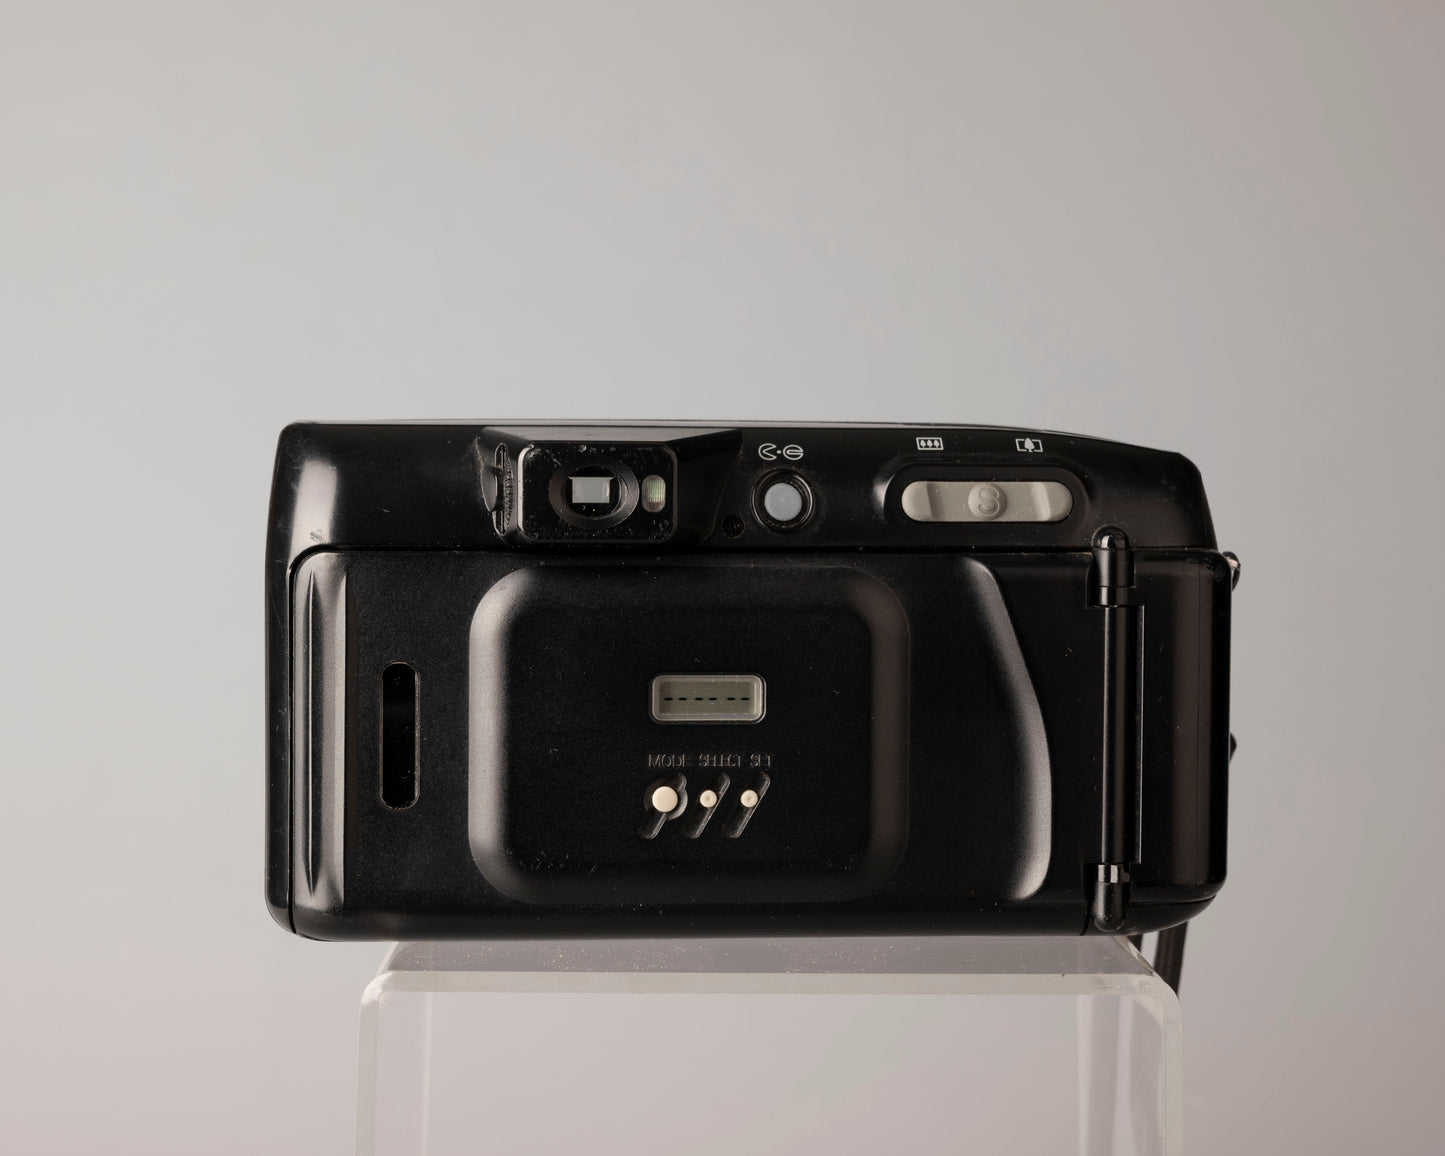 Appareil photo Fujifilm DL-1000 Zoom 35 mm (série 91113415)